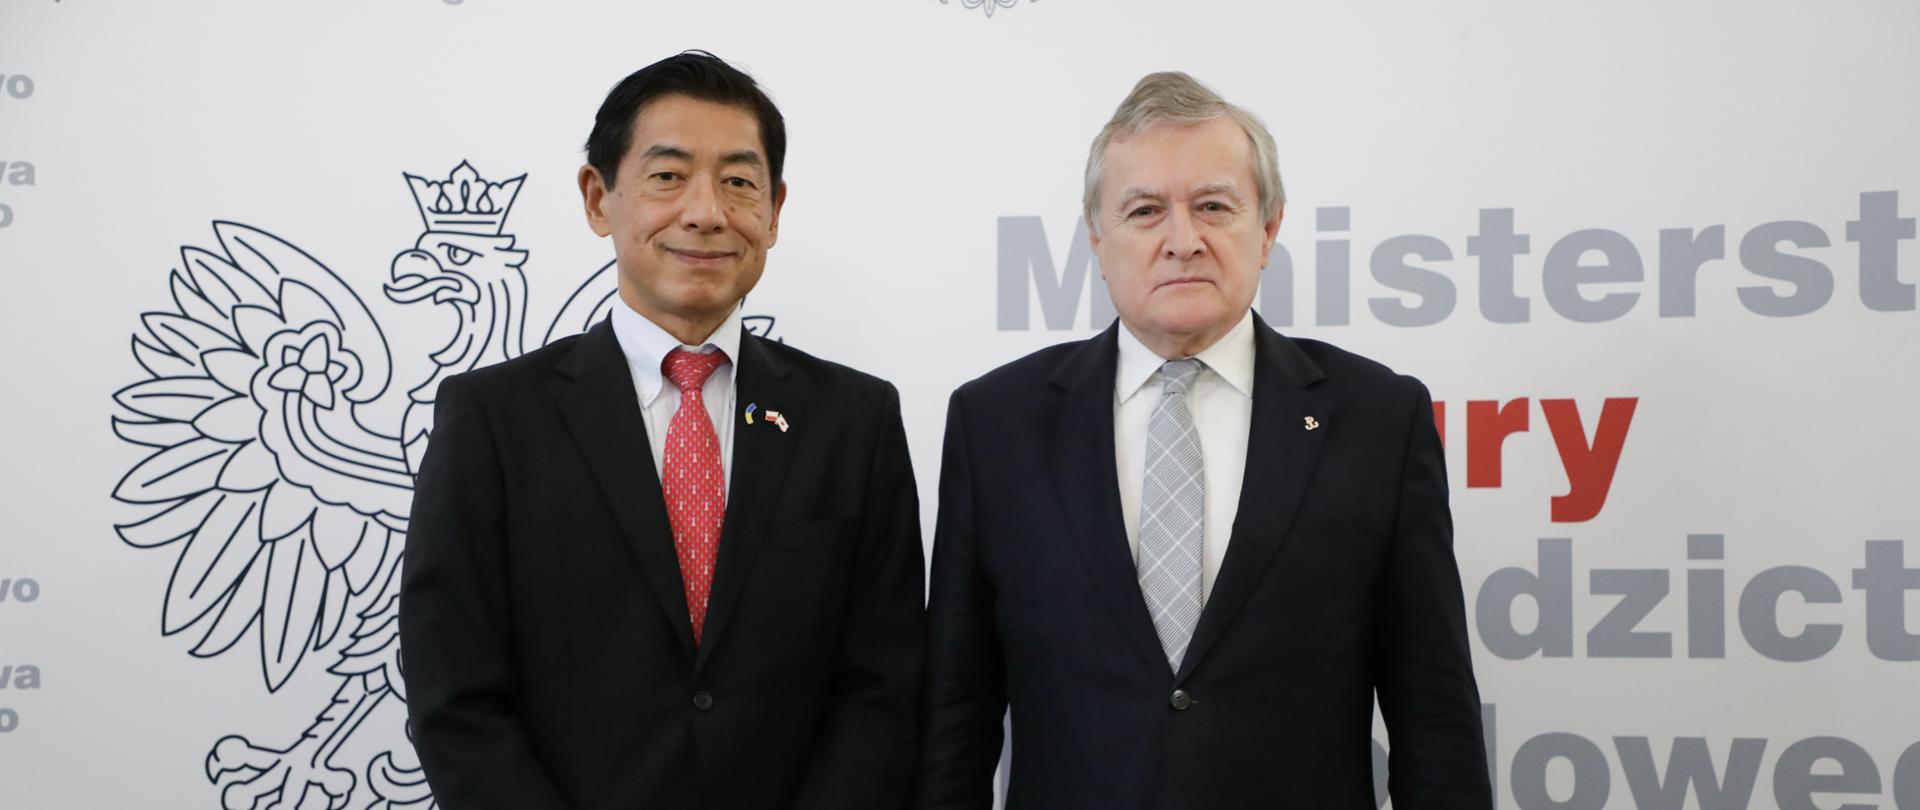 Wicepremier Piotr Gliński spotkał się z ambasadorem Japonii